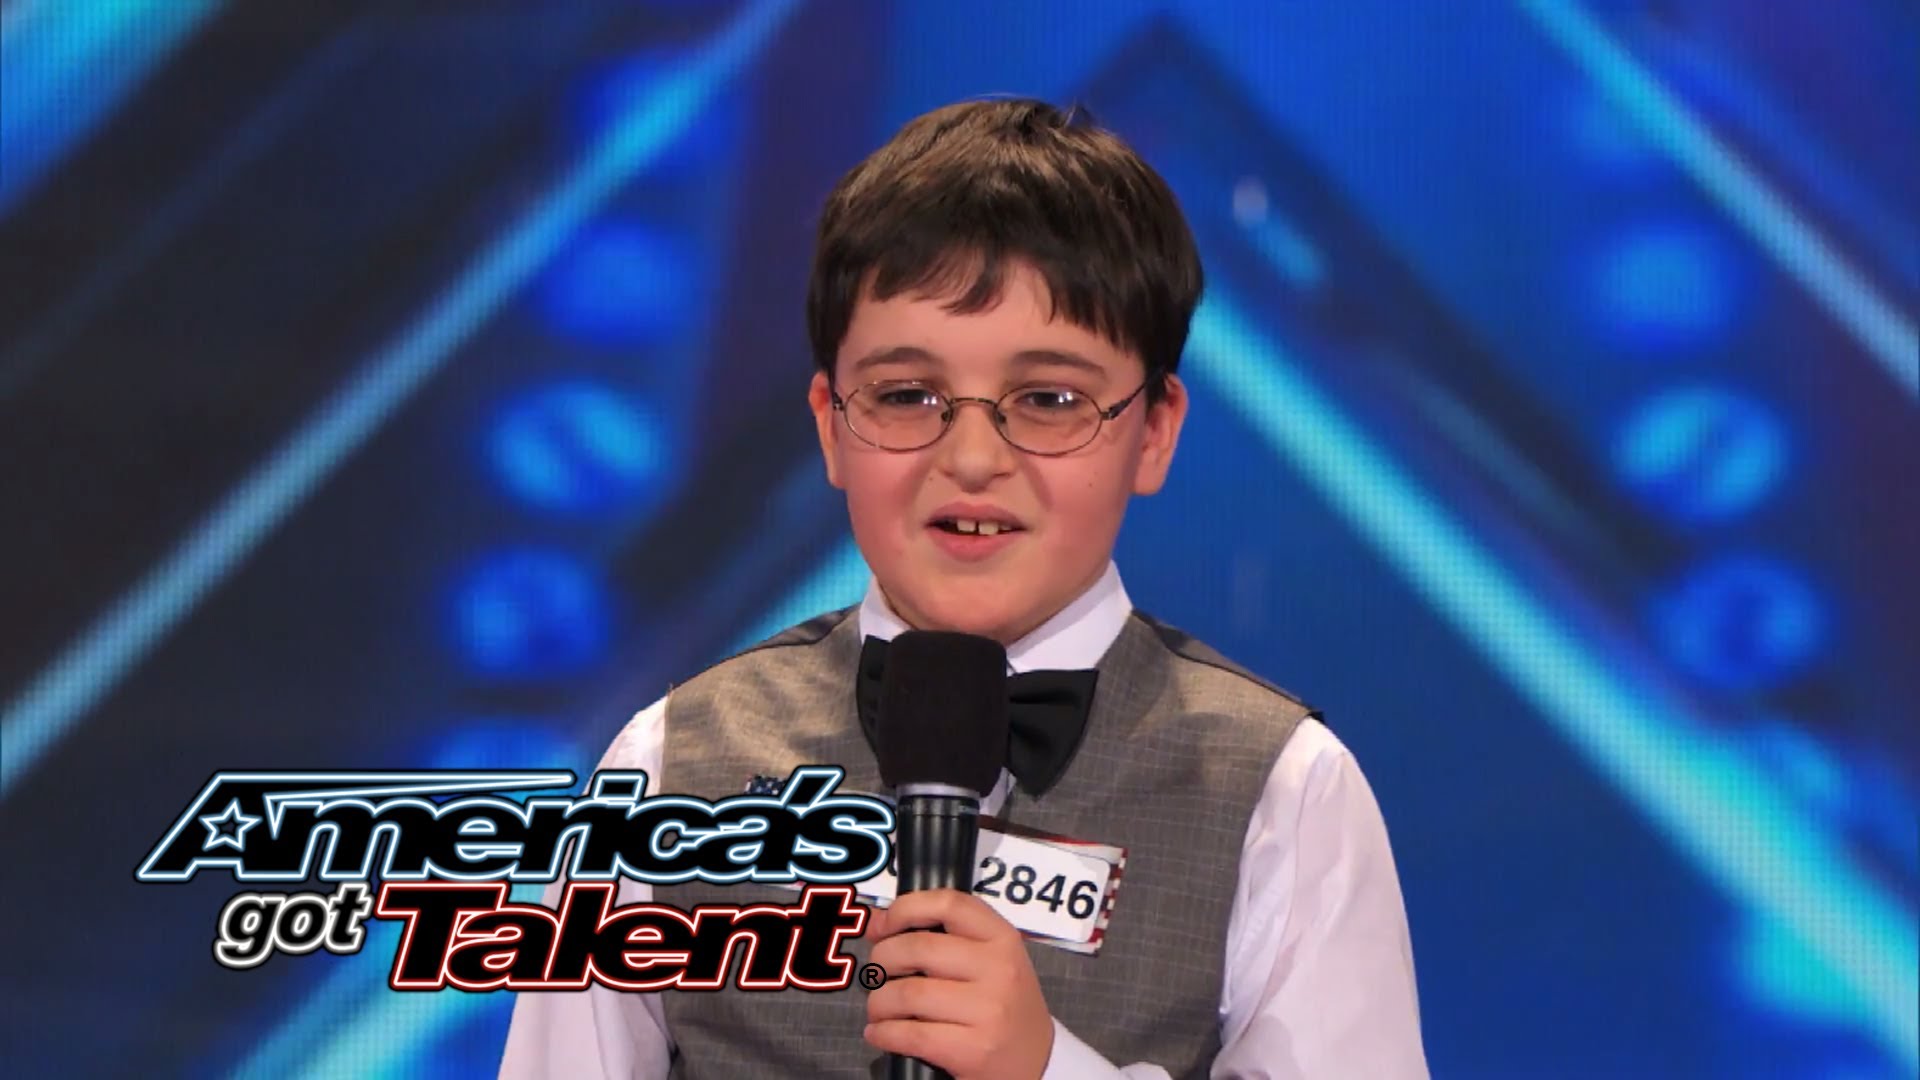 Pasauli šokē 9 gadīgs zēns – ģēnijs! (Nine-year-old piano prodigy wows judges on America’s Got Talent)